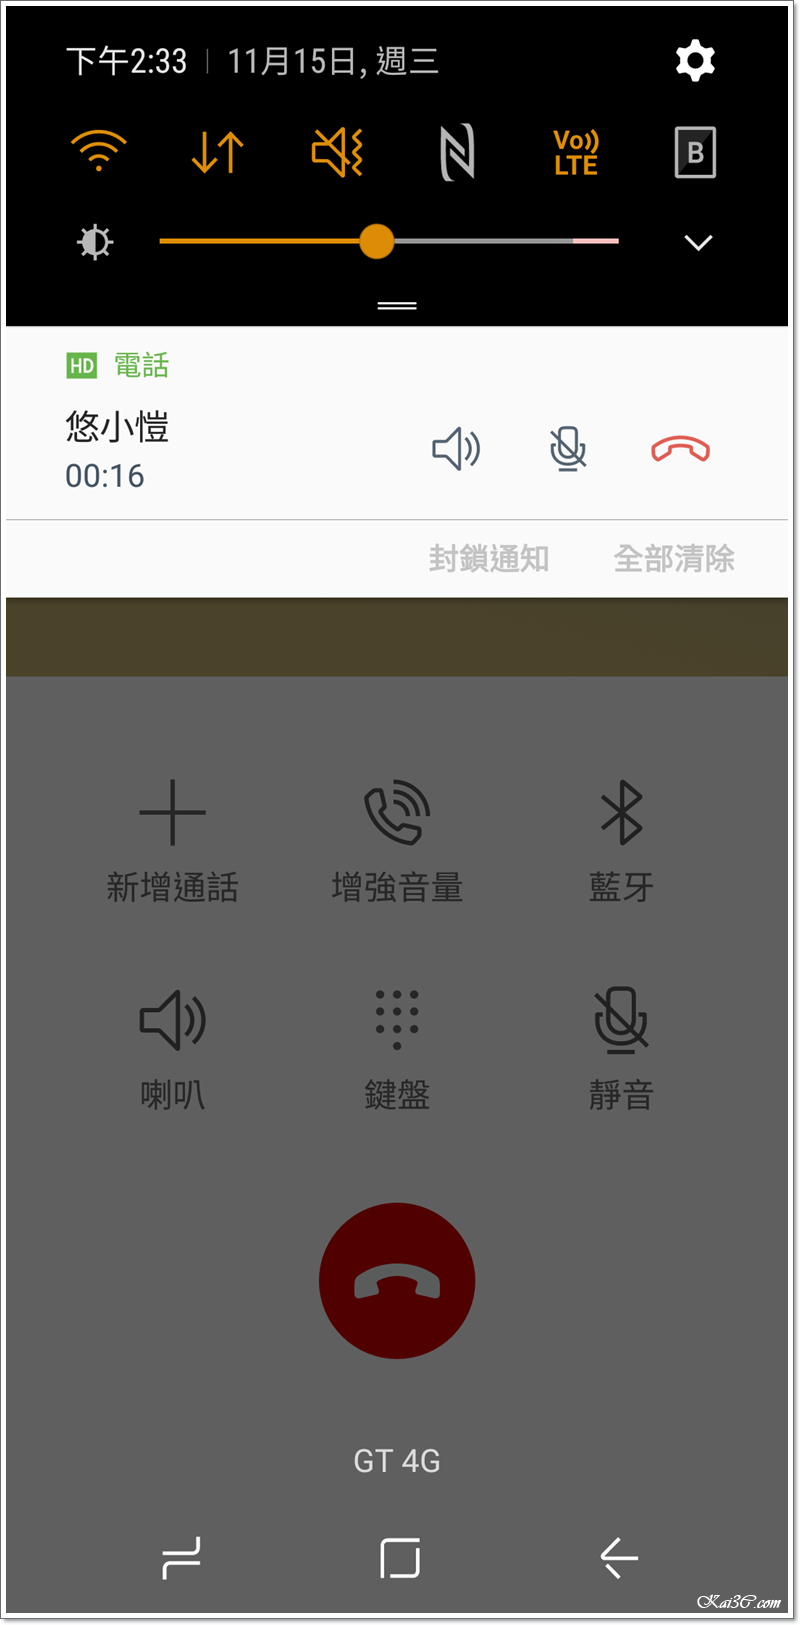 [分享] 中華電信 VoLTE 與 VoWiFi 完整功能開通！適用機種與服務費用說明 - 電腦王阿達